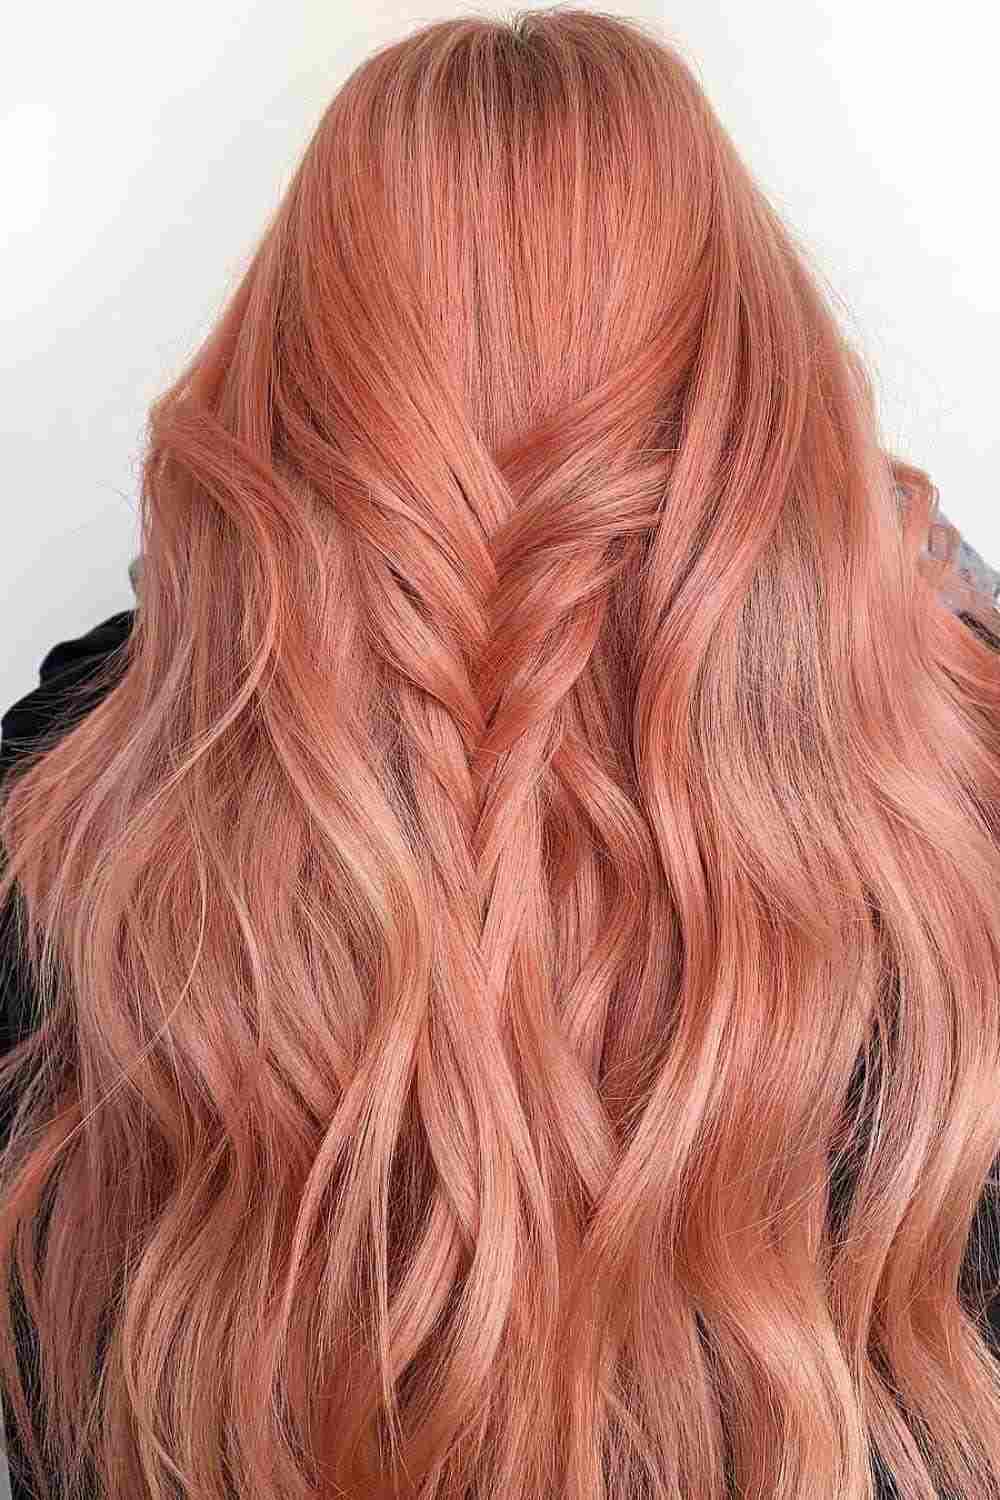 Living Coral Hair Haarfarbe Haartrends Sommer 2019 lange Haare Frisuren Ideen